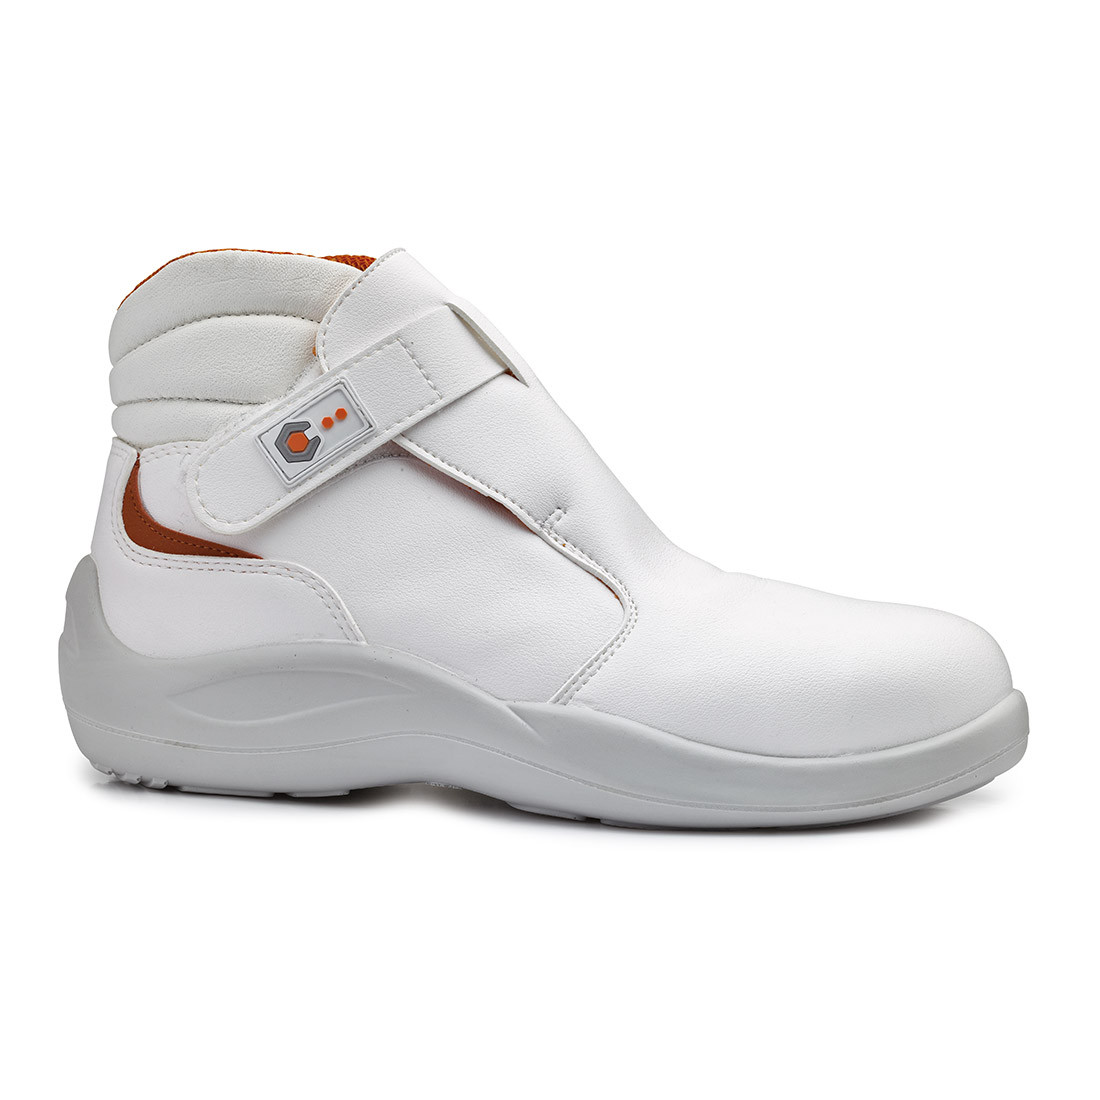 Cromo Ankle Boot S2 SRC - Les chaussures de protection